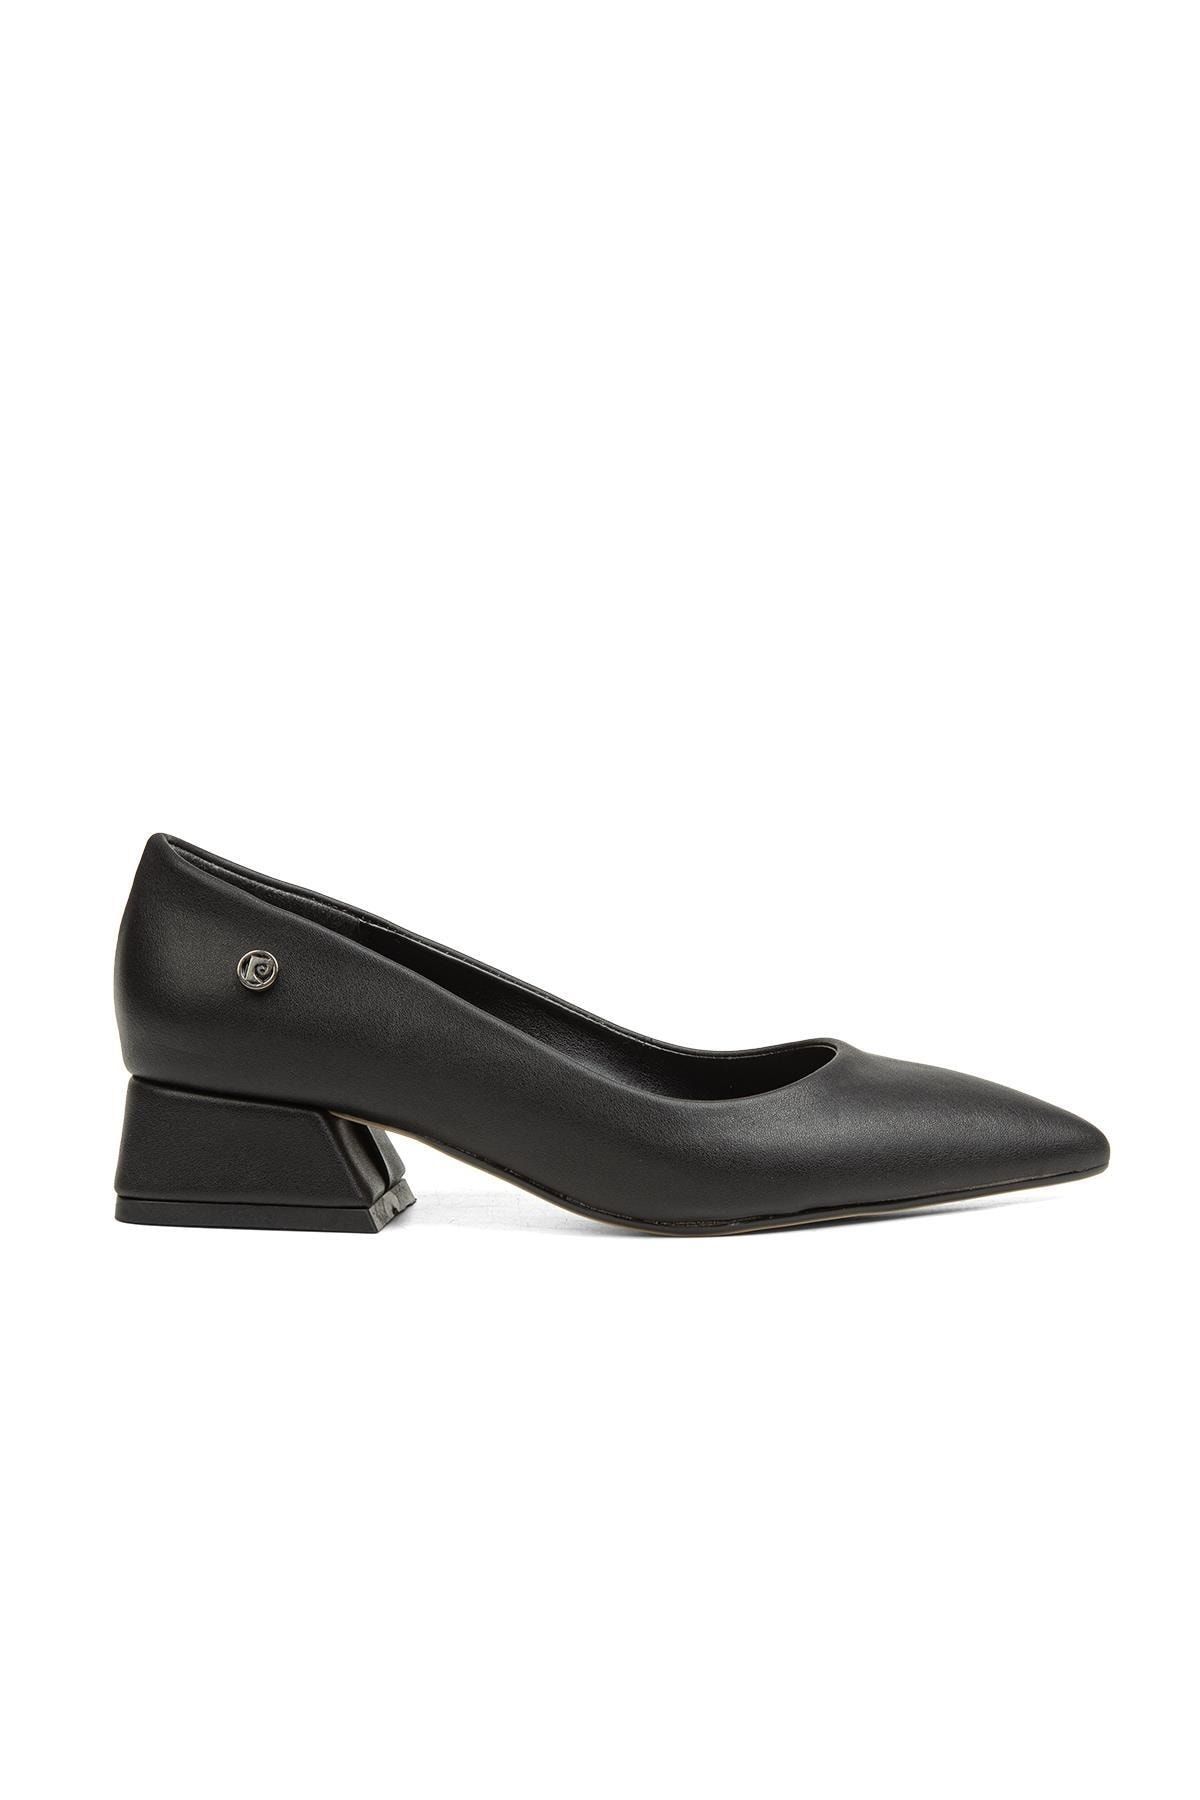 Pierre Cardin ® | Pc-52009-3478 Siyah Cilt - Kadın Topuklu Ayakkabı